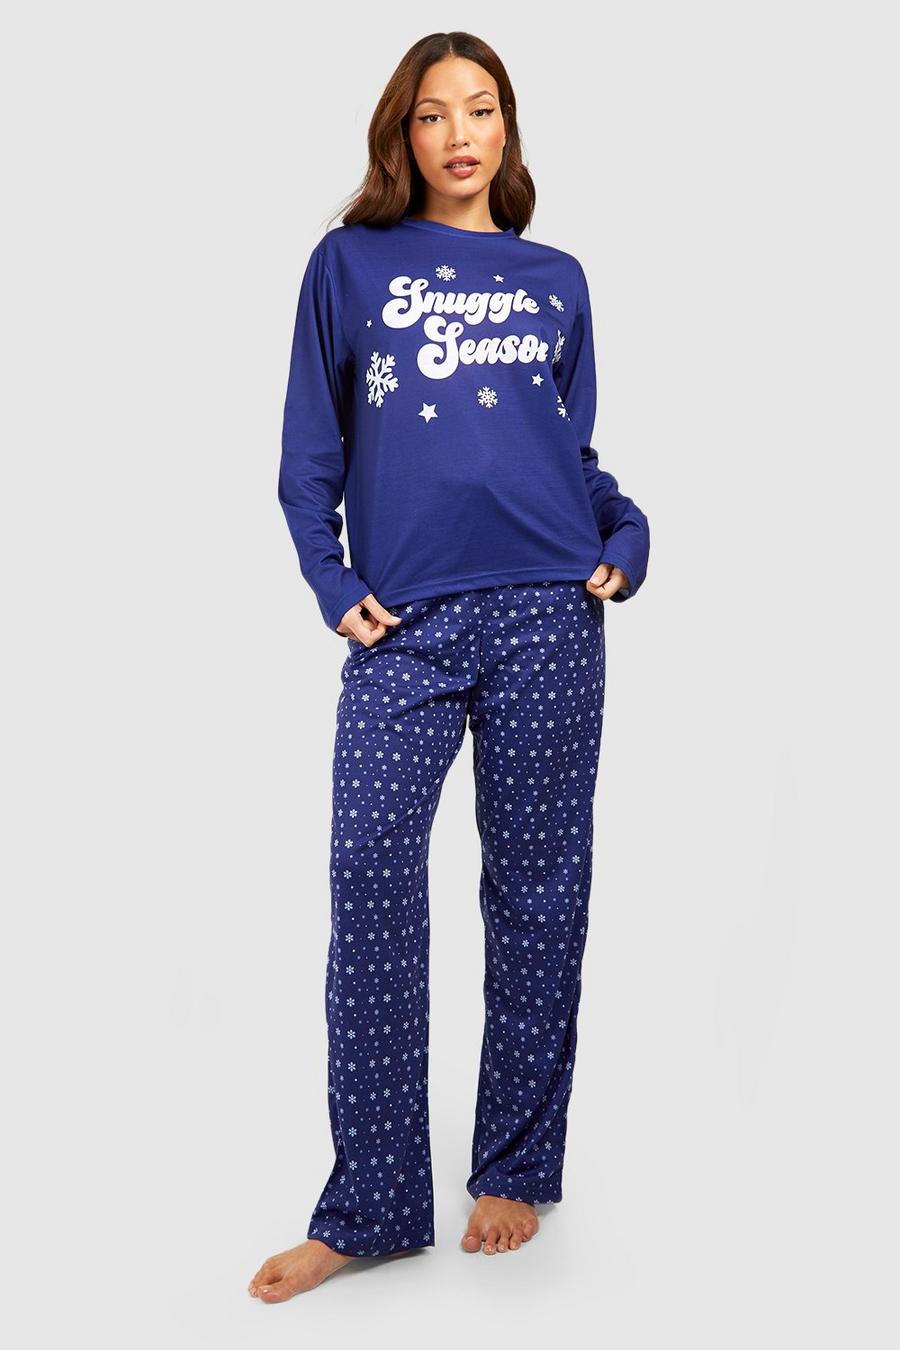 Blue Tall Snuggle Season Pajama Set image number 1